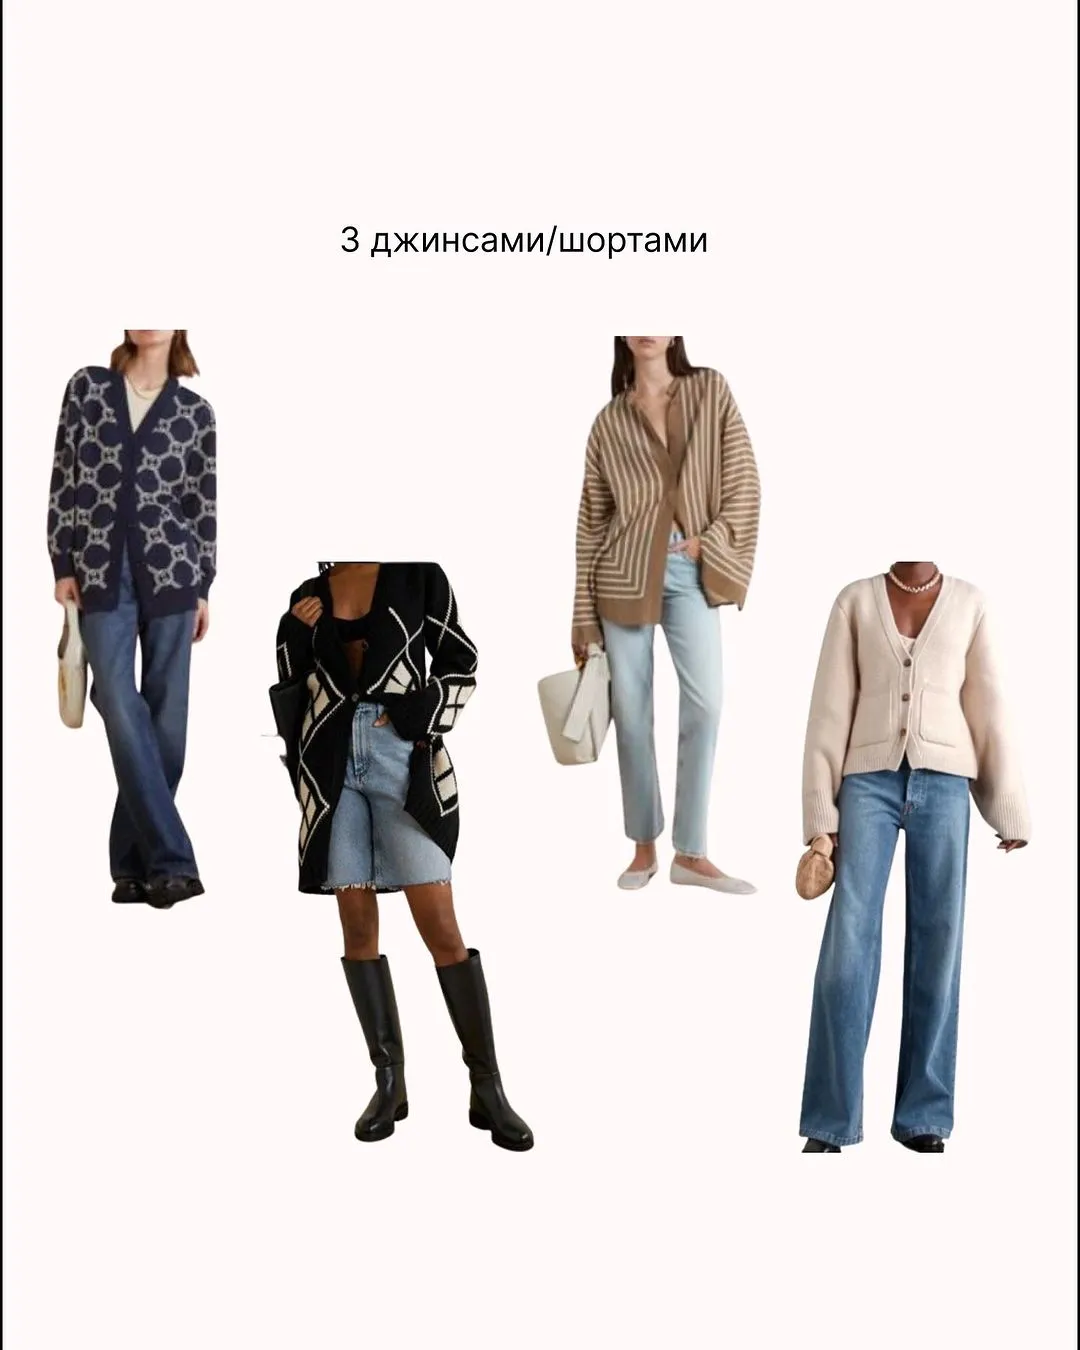 Кардиганы с джинсами и шортами / Фото stylist.viktorova